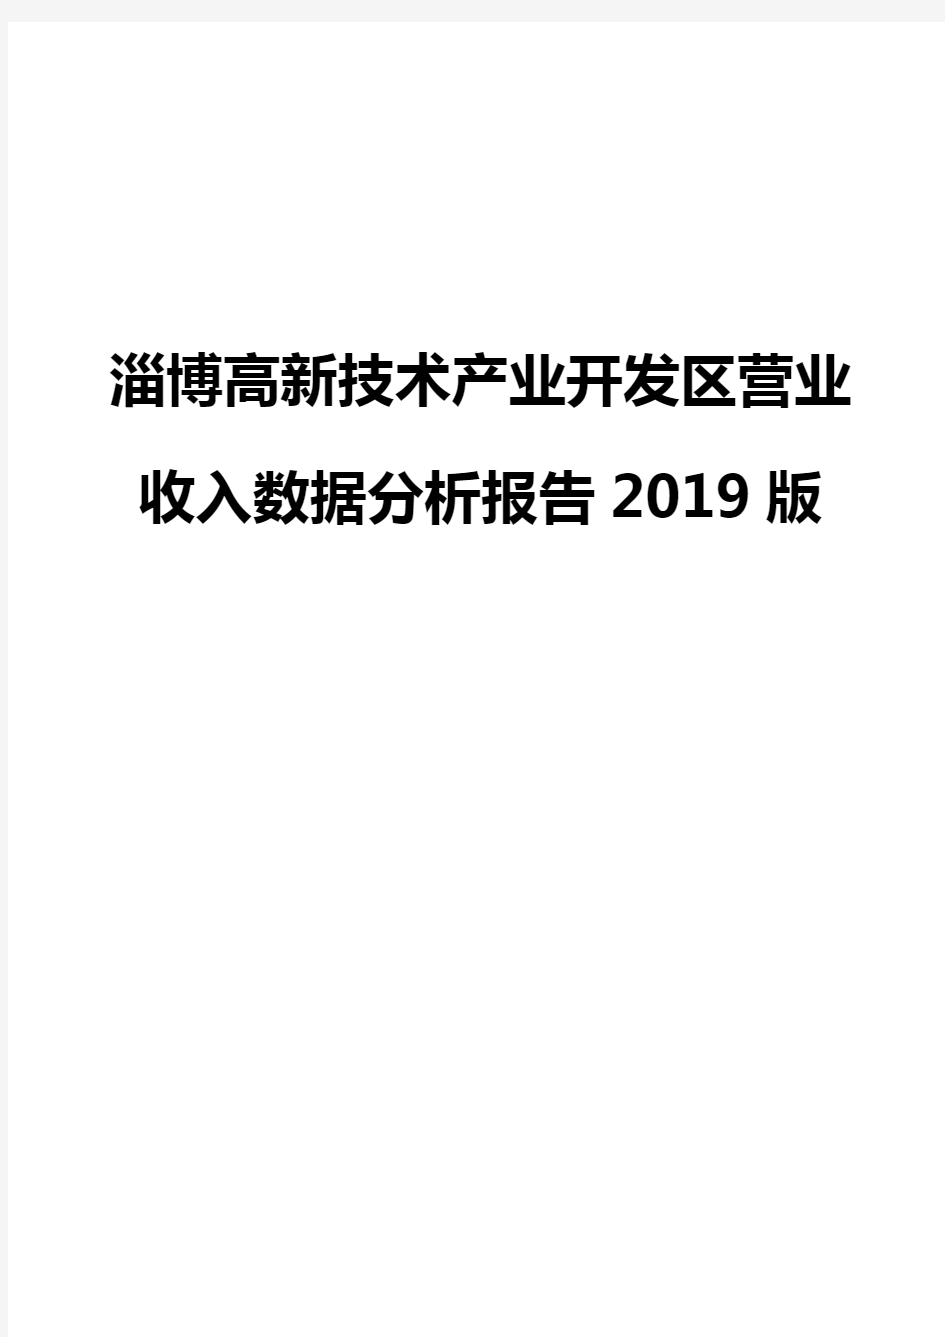 淄博高新技术产业开发区营业收入数据分析报告2019版